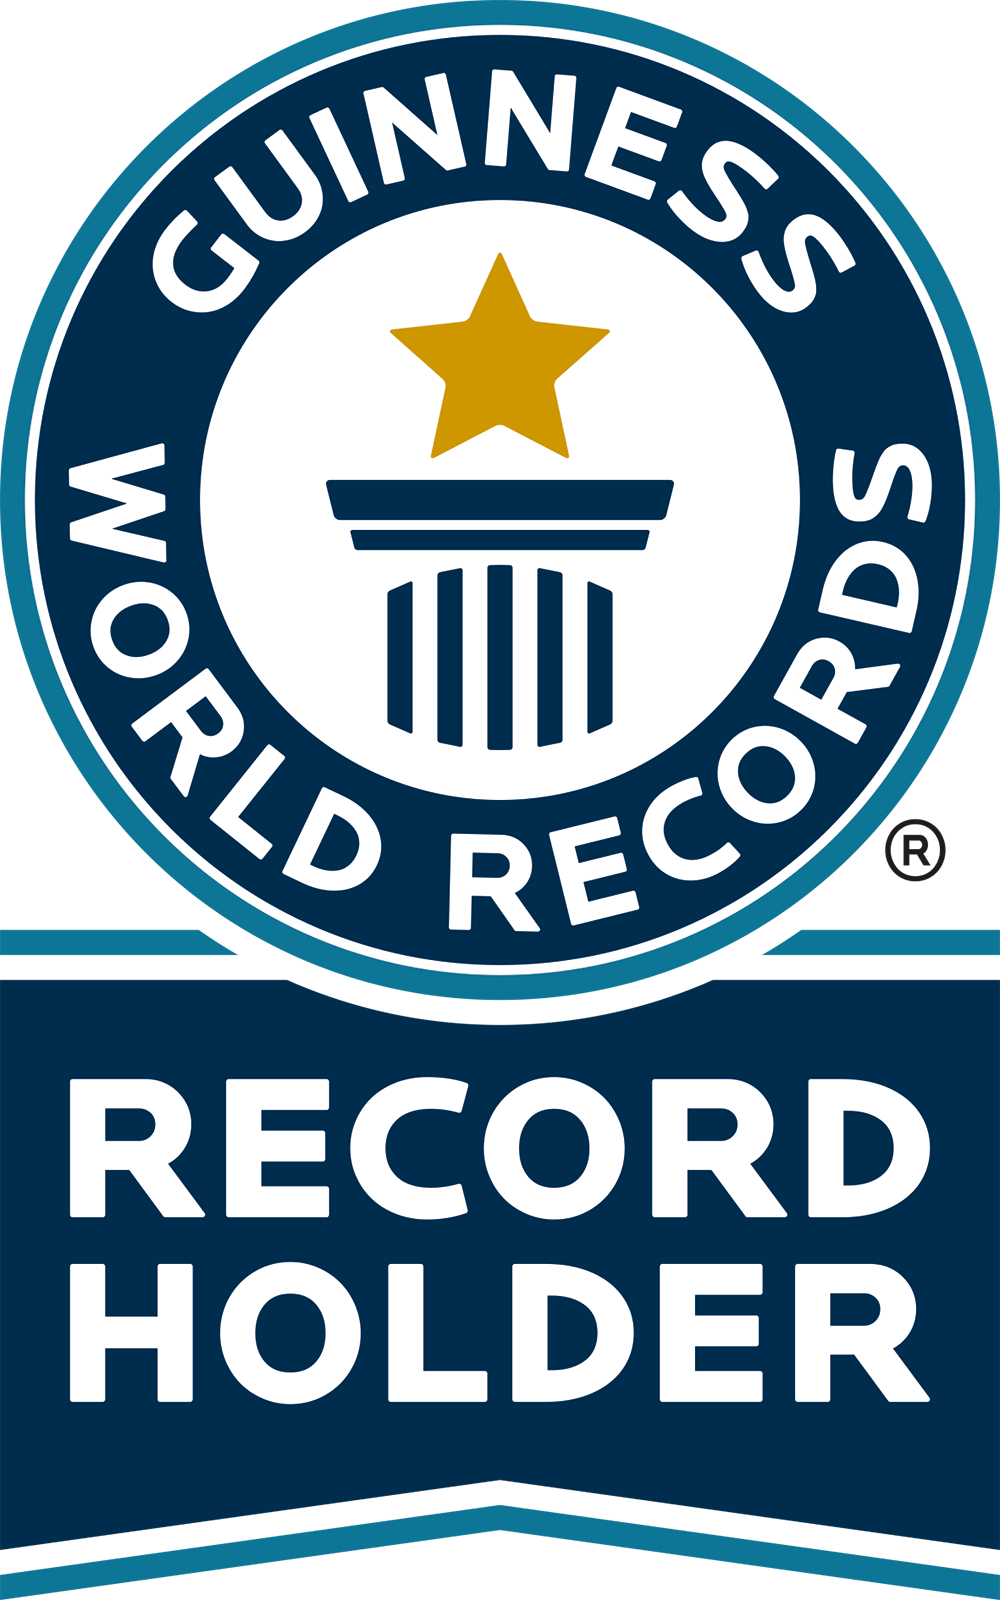 Logo Guinness - Record holder